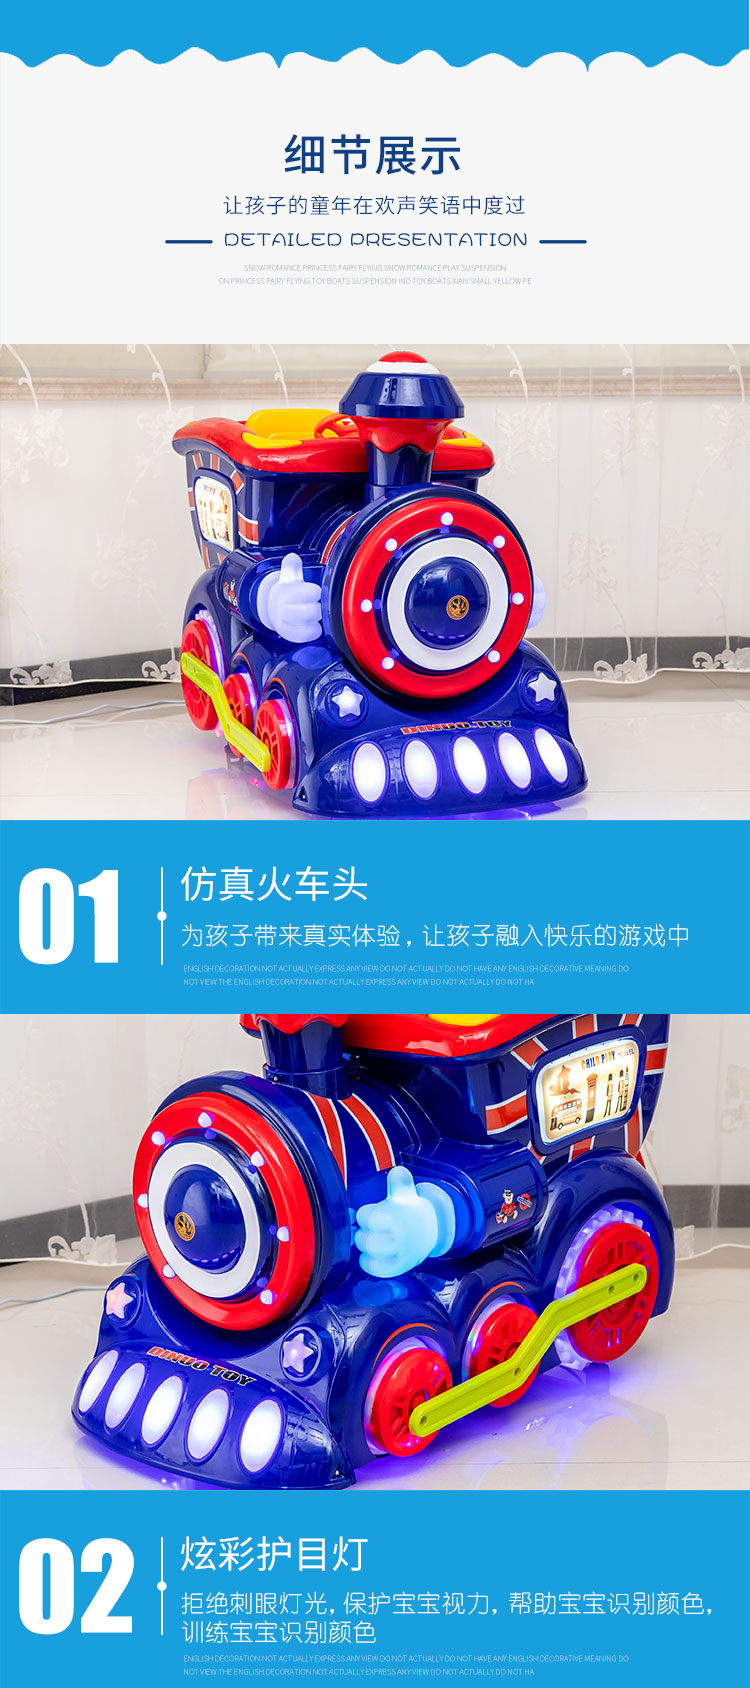 广州国乐 商用投币摇摆车 电玩设备厂家 摇摇车 全国支持一件代发图片